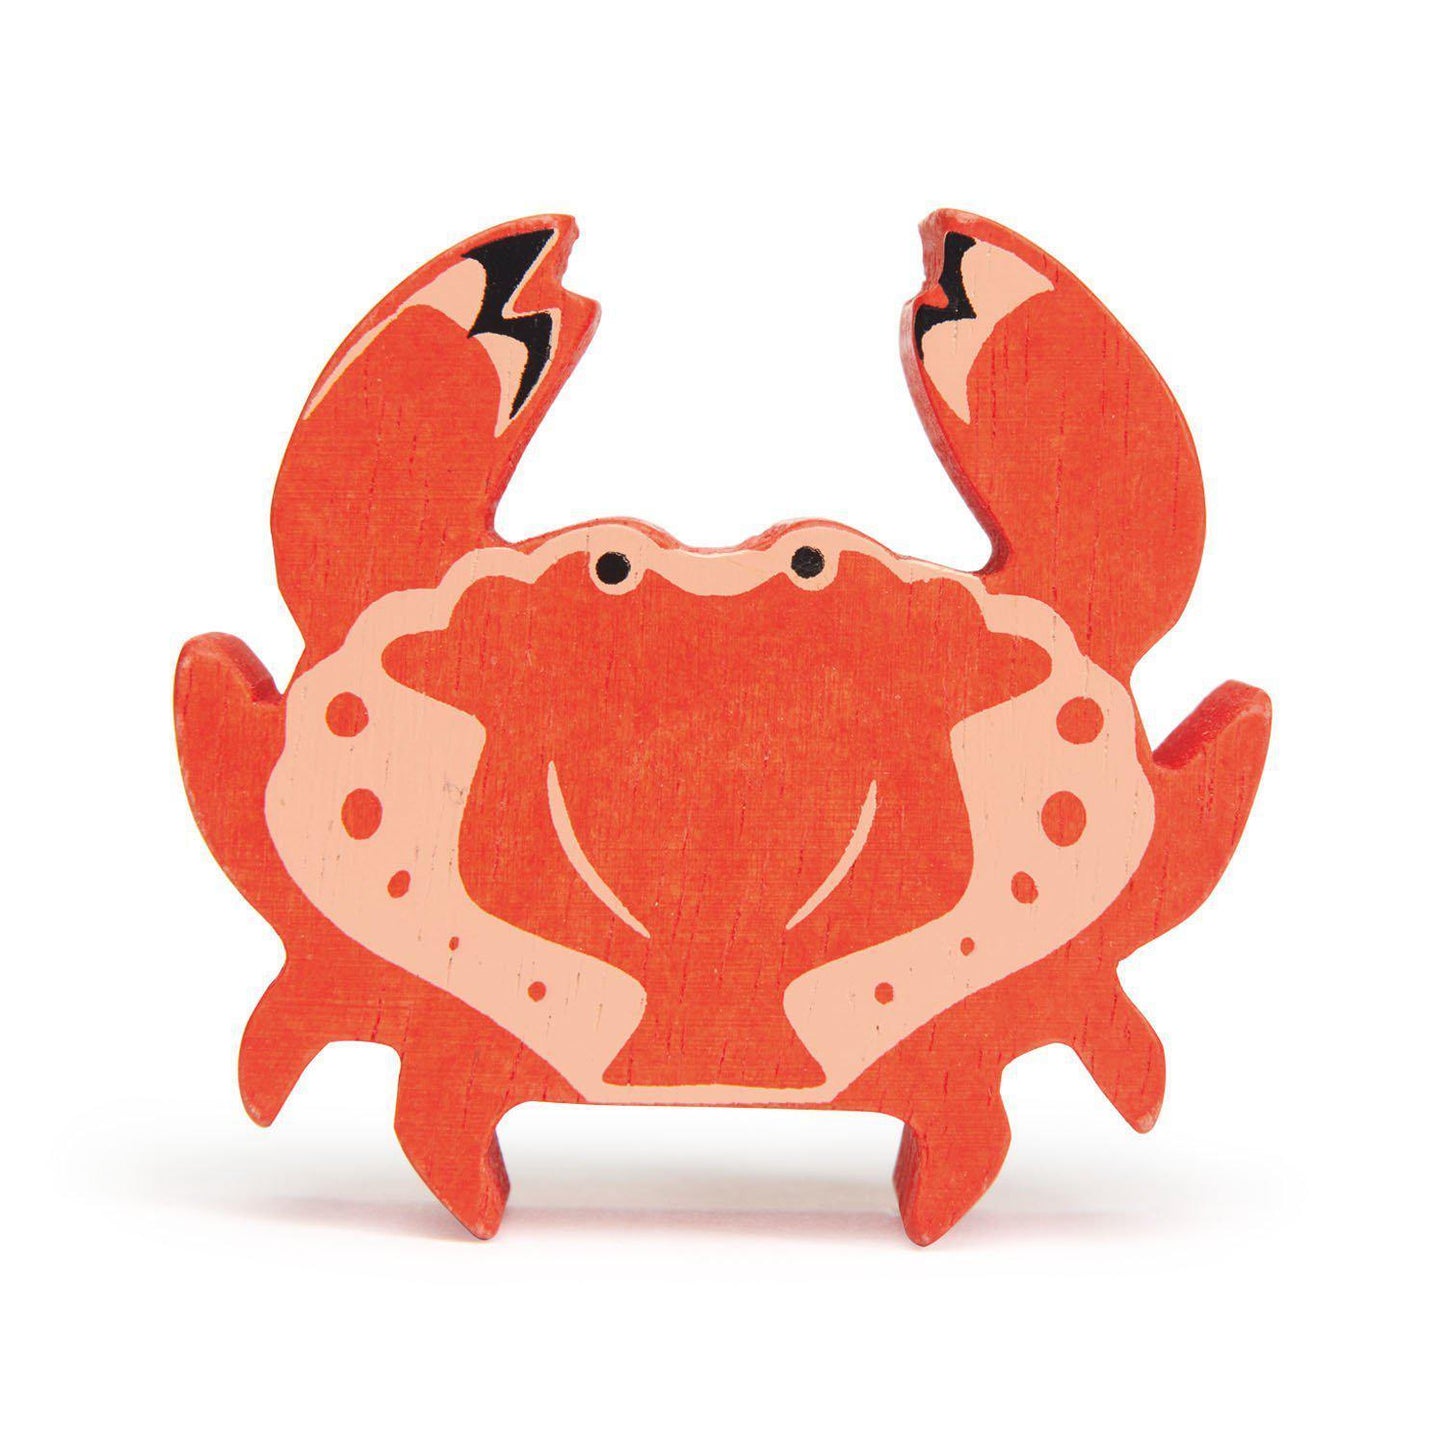 Rák, prémium minőségű fából - Crab - Tender Leaf Toys-Tender Leaf Toys-1-Játszma.ro - A maradandó élmények boltja